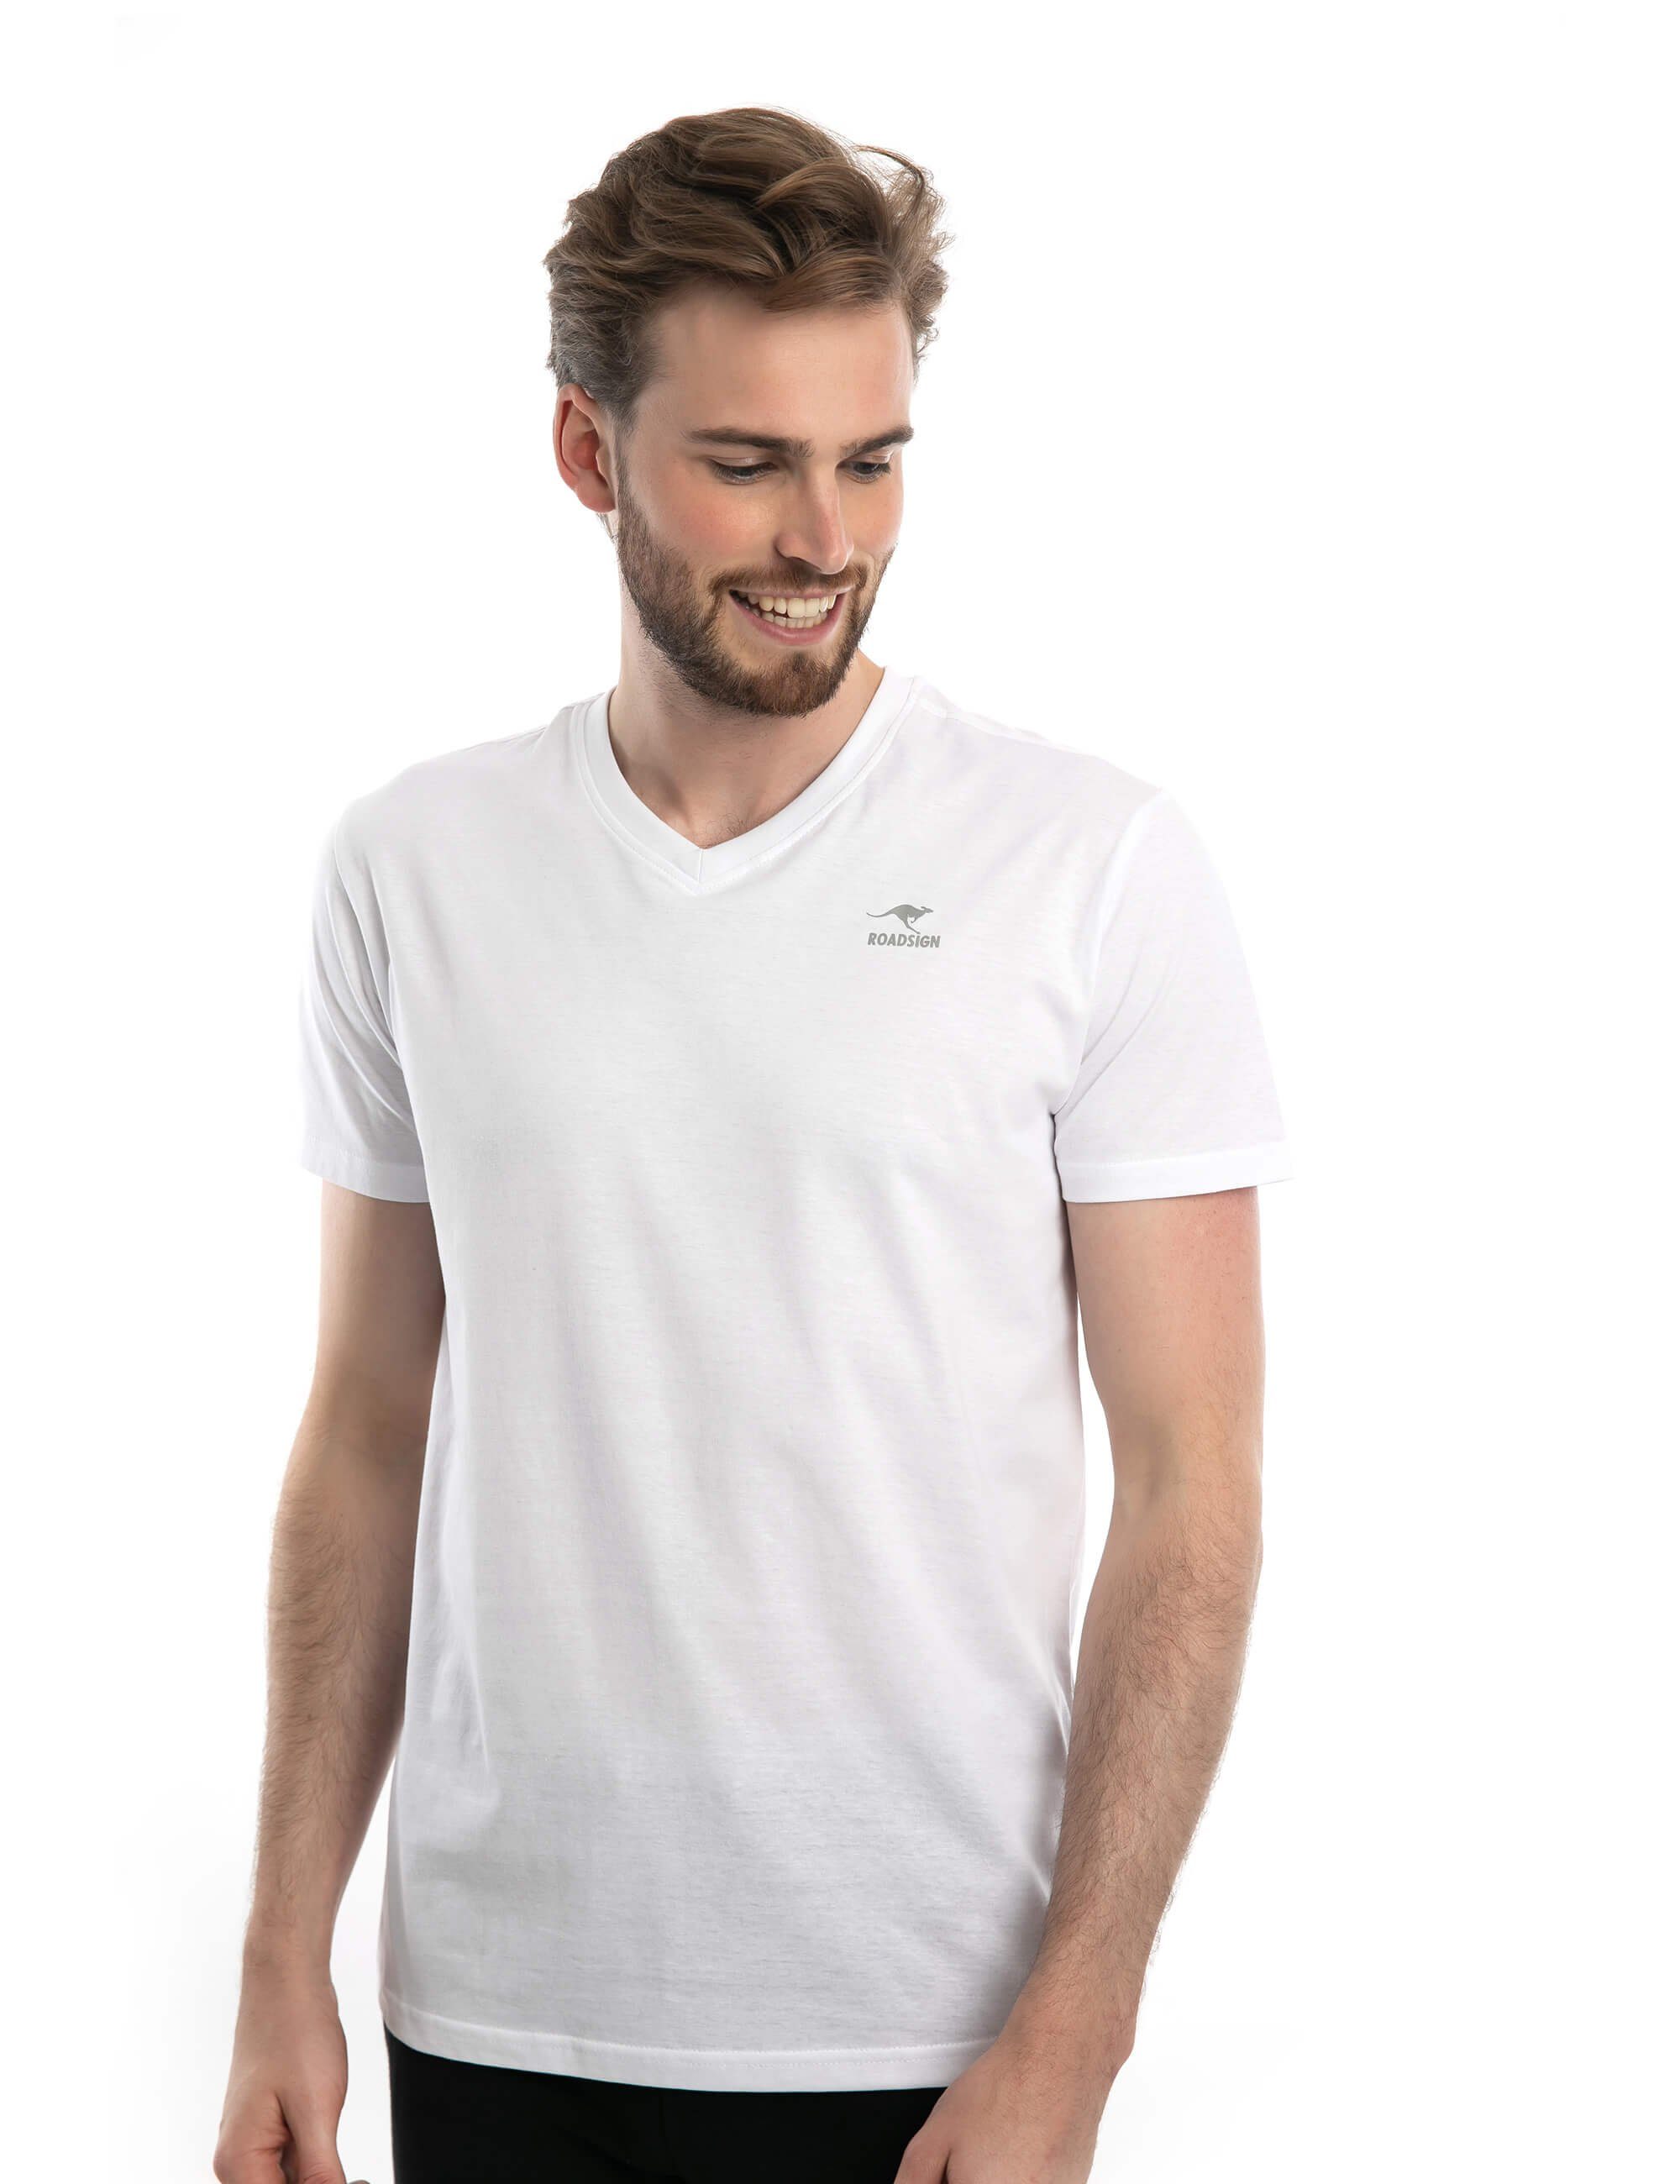 ROADSIGN australia T-Shirt Basic (Doppelpack, 2-tlg., 2er-Pack) mit V-Ausschnitt, 100% Baumwolle (2-er Pack) weiß